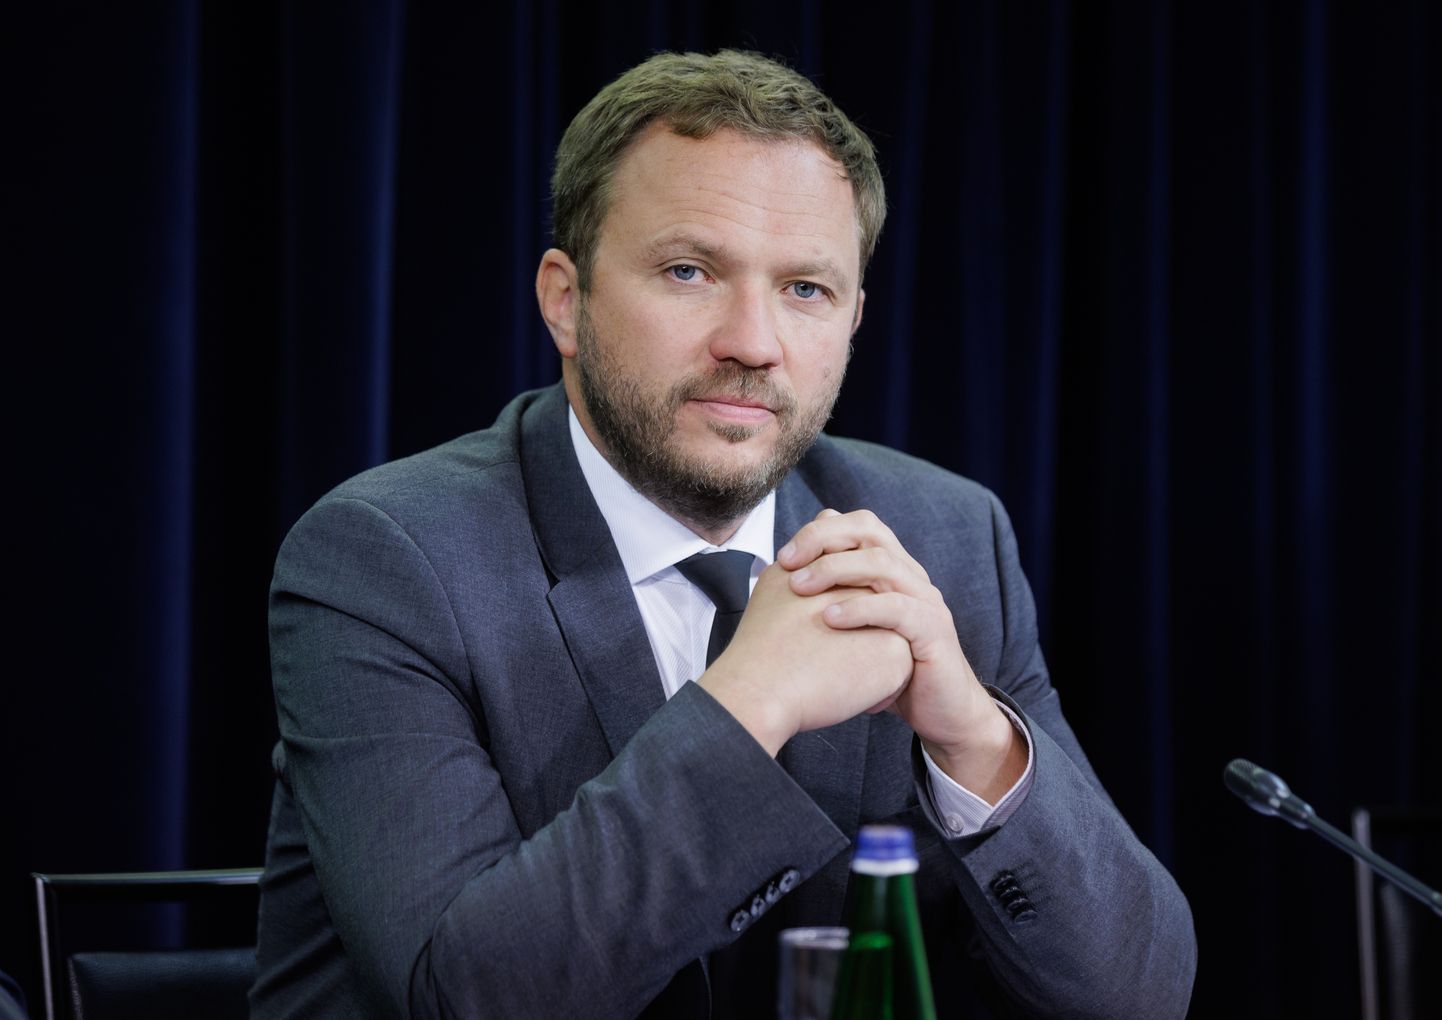 Välisminister Margus Tsahkna (Eesti 200) sõnul tuleb jätkata jõupingutusi venelaste isoleerimiseks rahvusvahelisel areenil.